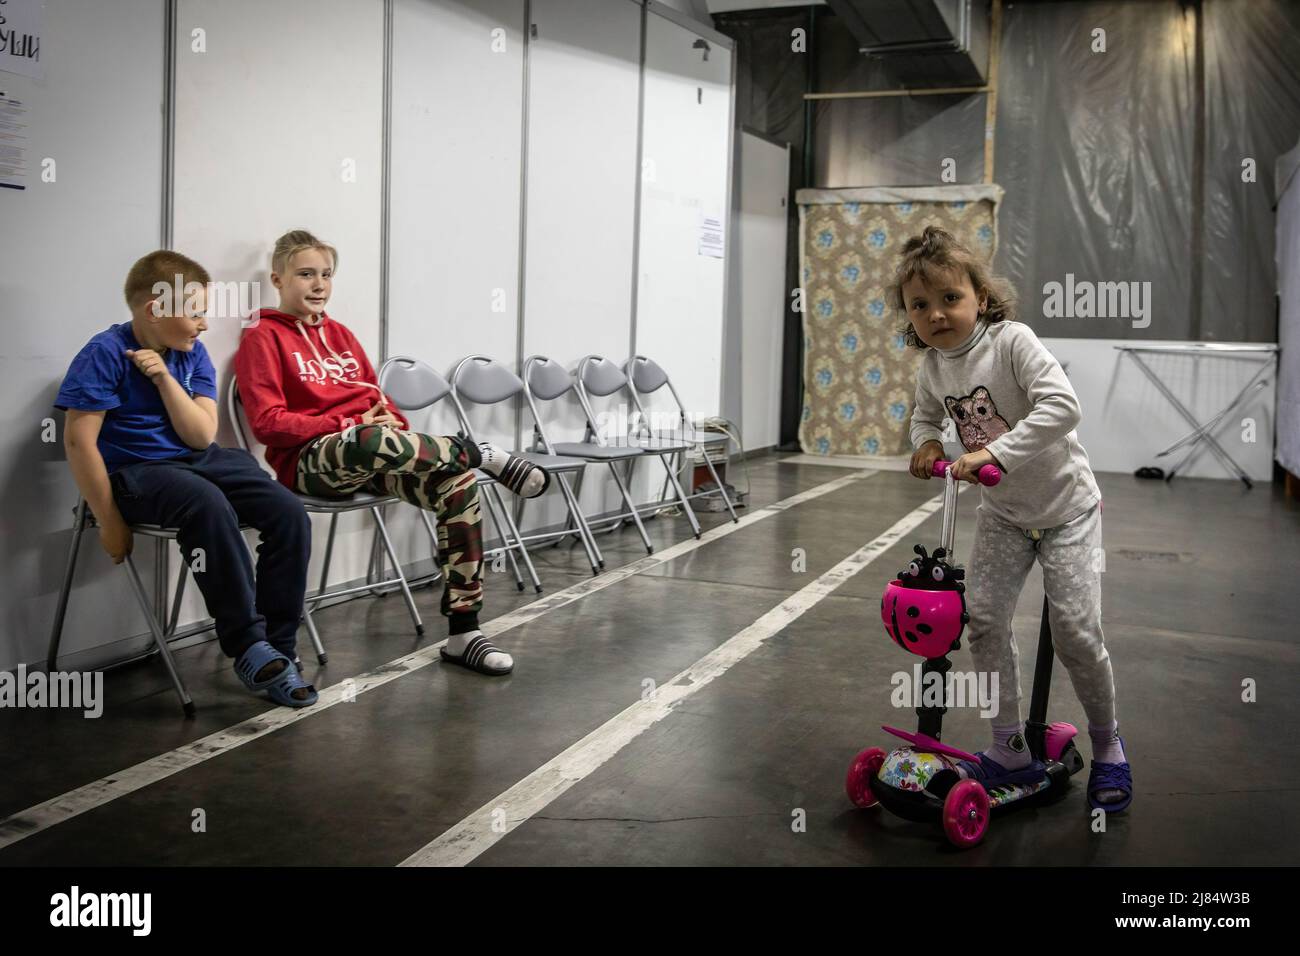 Zaporizhzhia, Ucrania. 11th de mayo de 2022. A los niños se les ve jugando en un refugio de refugiados subterráneo. Se han establecido refugios temporales para refugiados en Zaporizhia, ya que la ciudad ha estado recibiendo constantemente refugiados que huyen de territorios controlados por Rusia en el este y el sur del país. Según las Naciones Unidas, se cree que más de 11 millones de personas han huido de sus hogares en Ucrania desde que comenzó el conflicto, con 7,7 millones de personas desplazadas dentro de su patria. Crédito: SOPA Images Limited/Alamy Live News Foto de stock